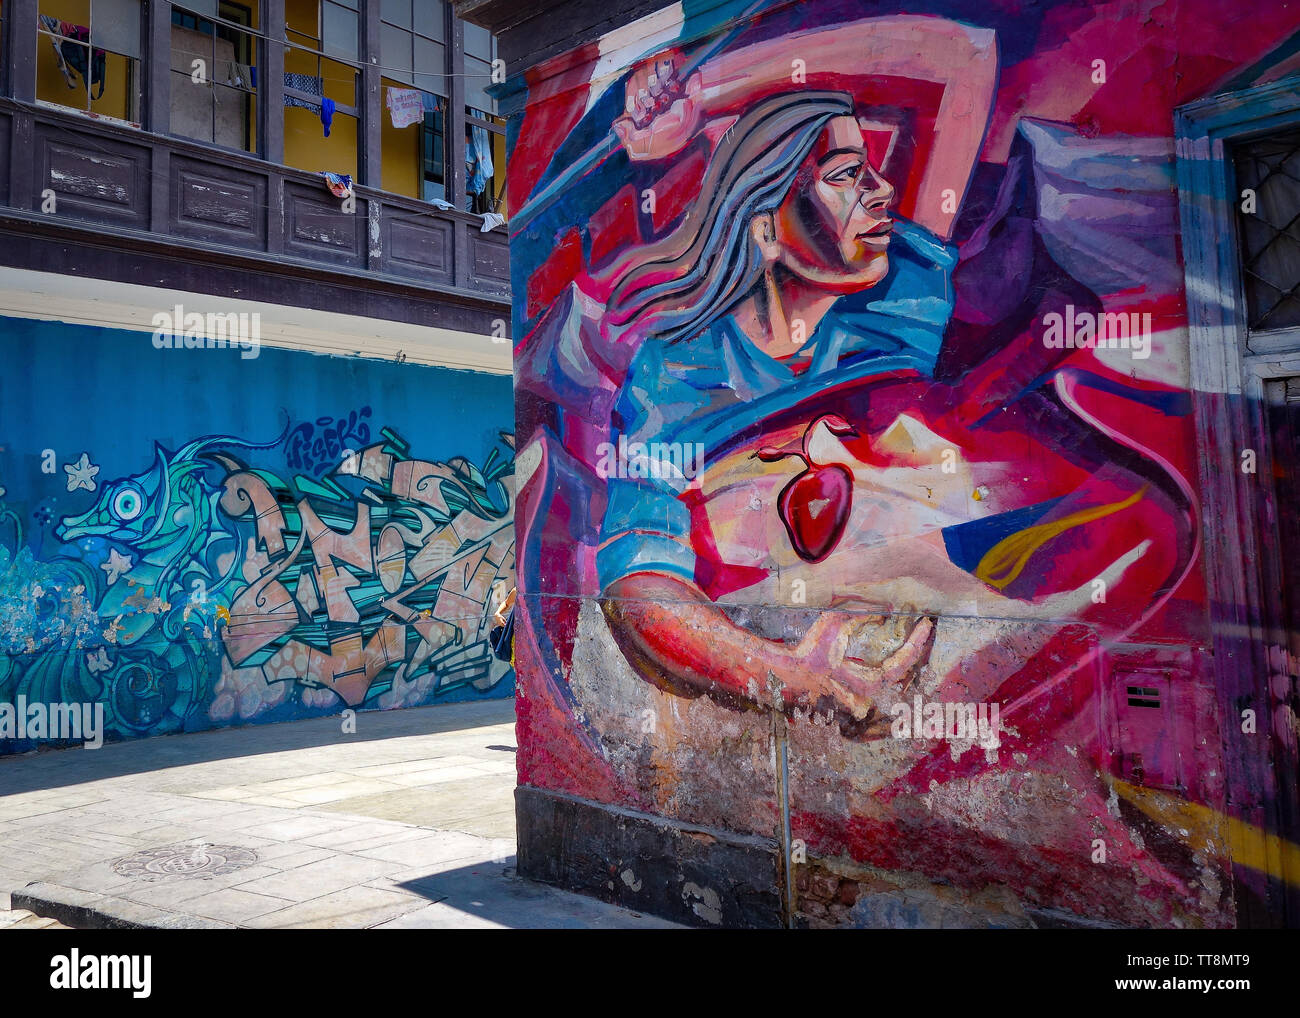 Art urbain murales dans les rues autour de monument de Callao, Lima, Pérou Banque D'Images